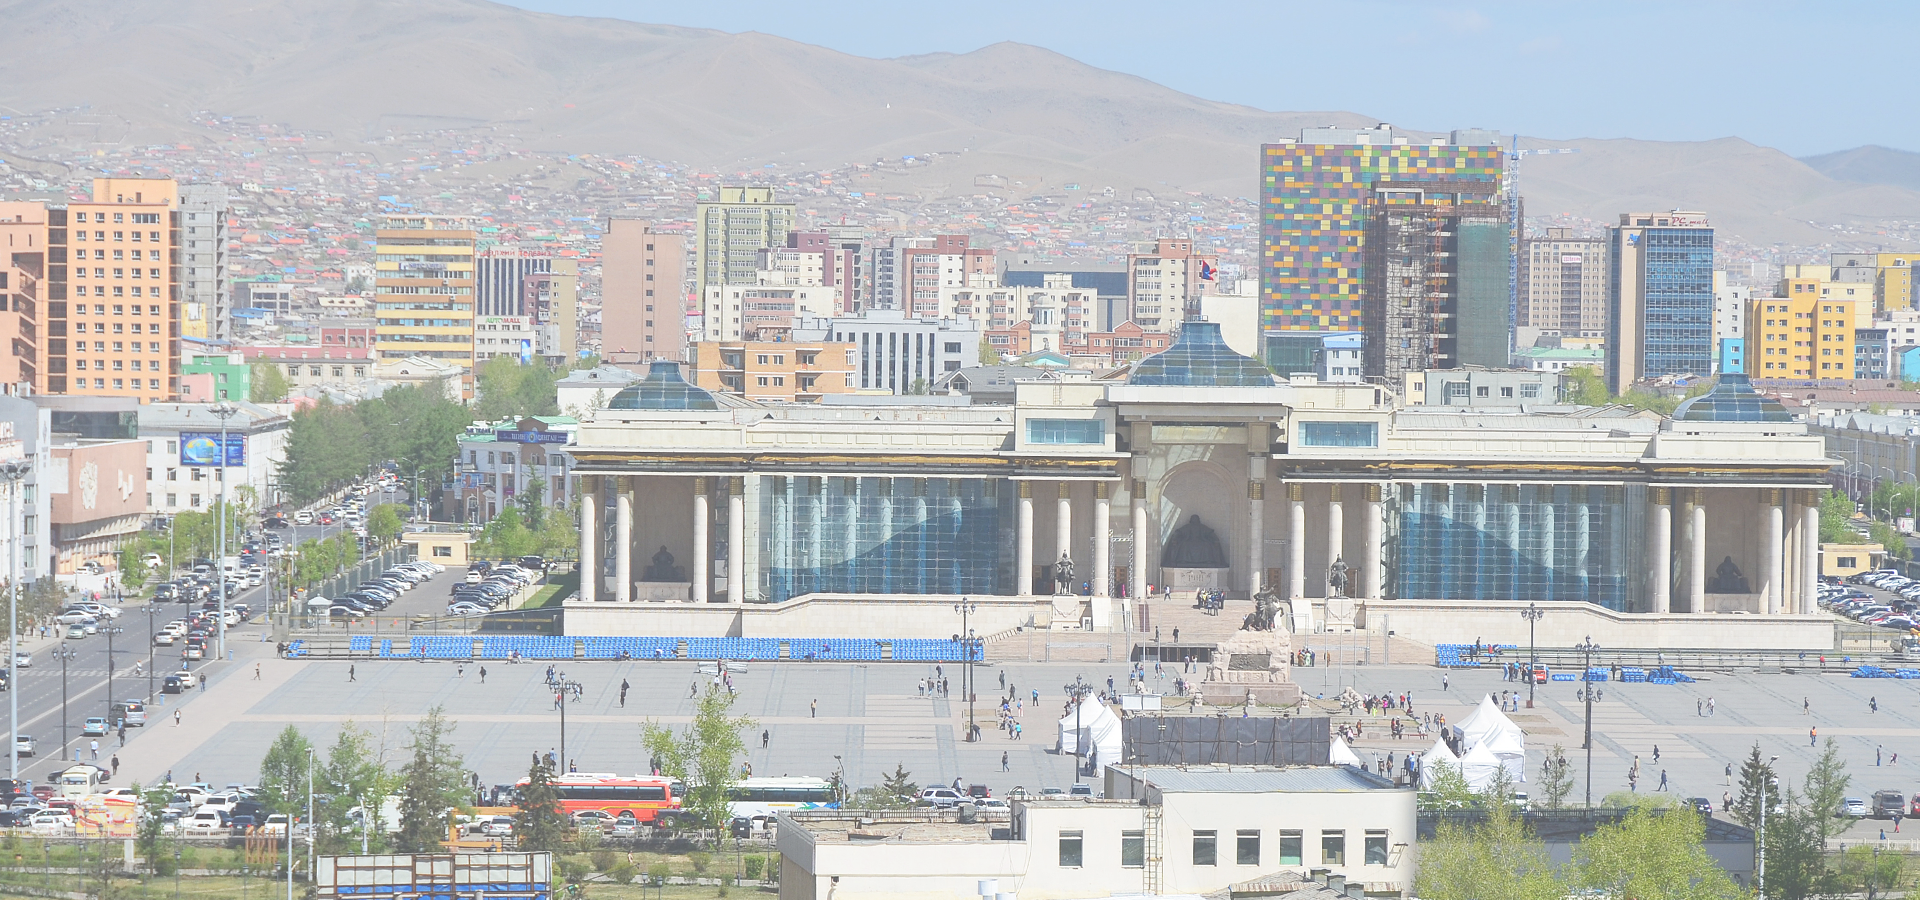 Ulaanbaatar, Mongolia